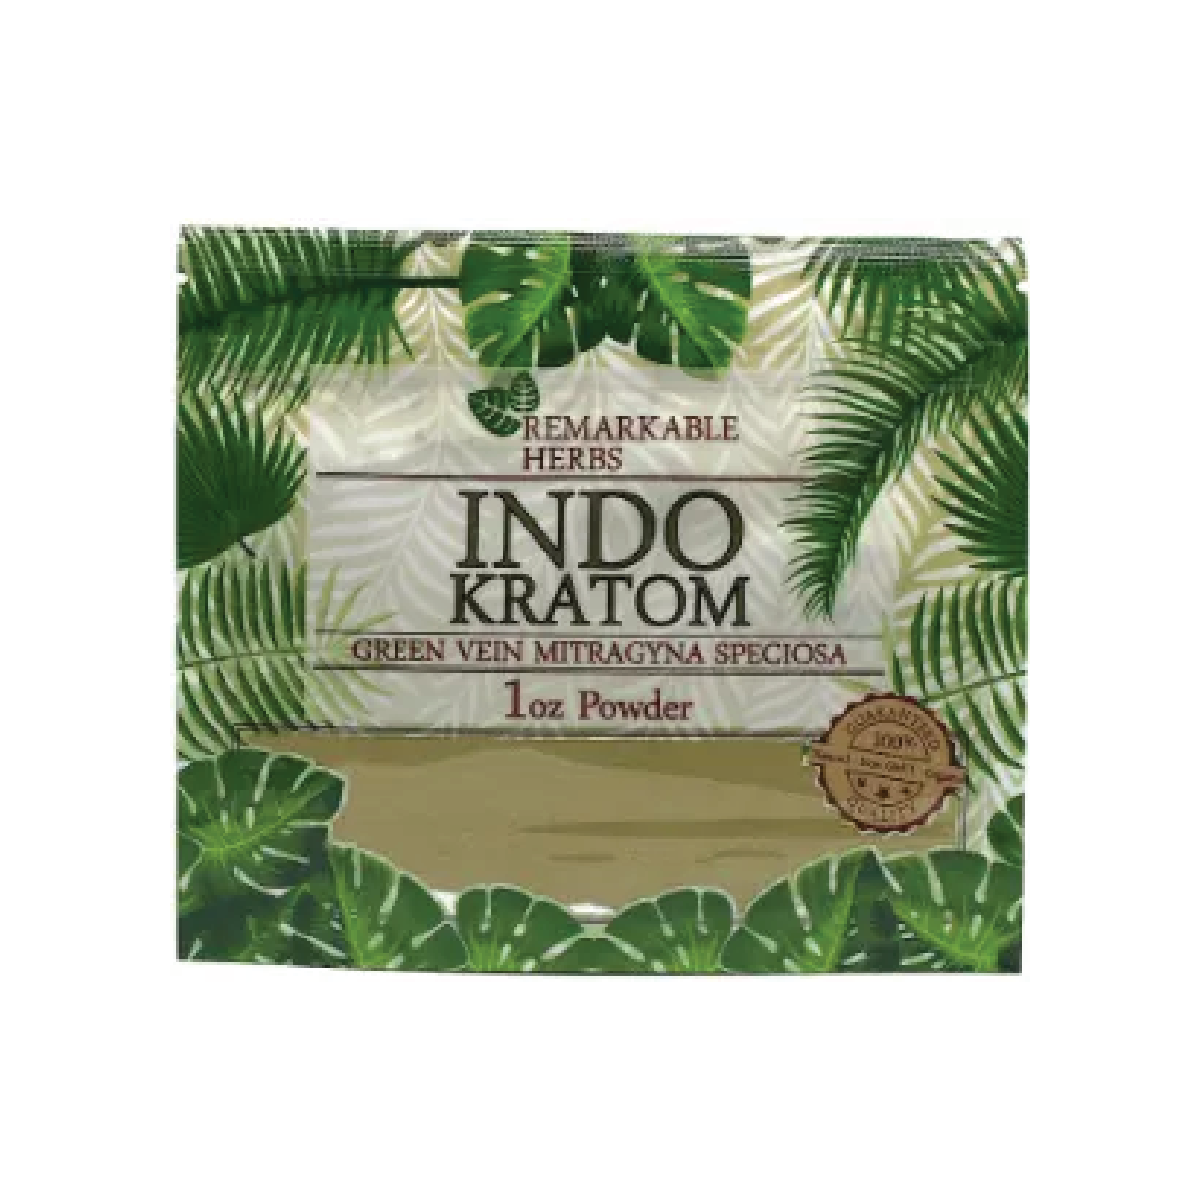 1oz Green Vein Indo Remarkable Herbs Kratom Powder